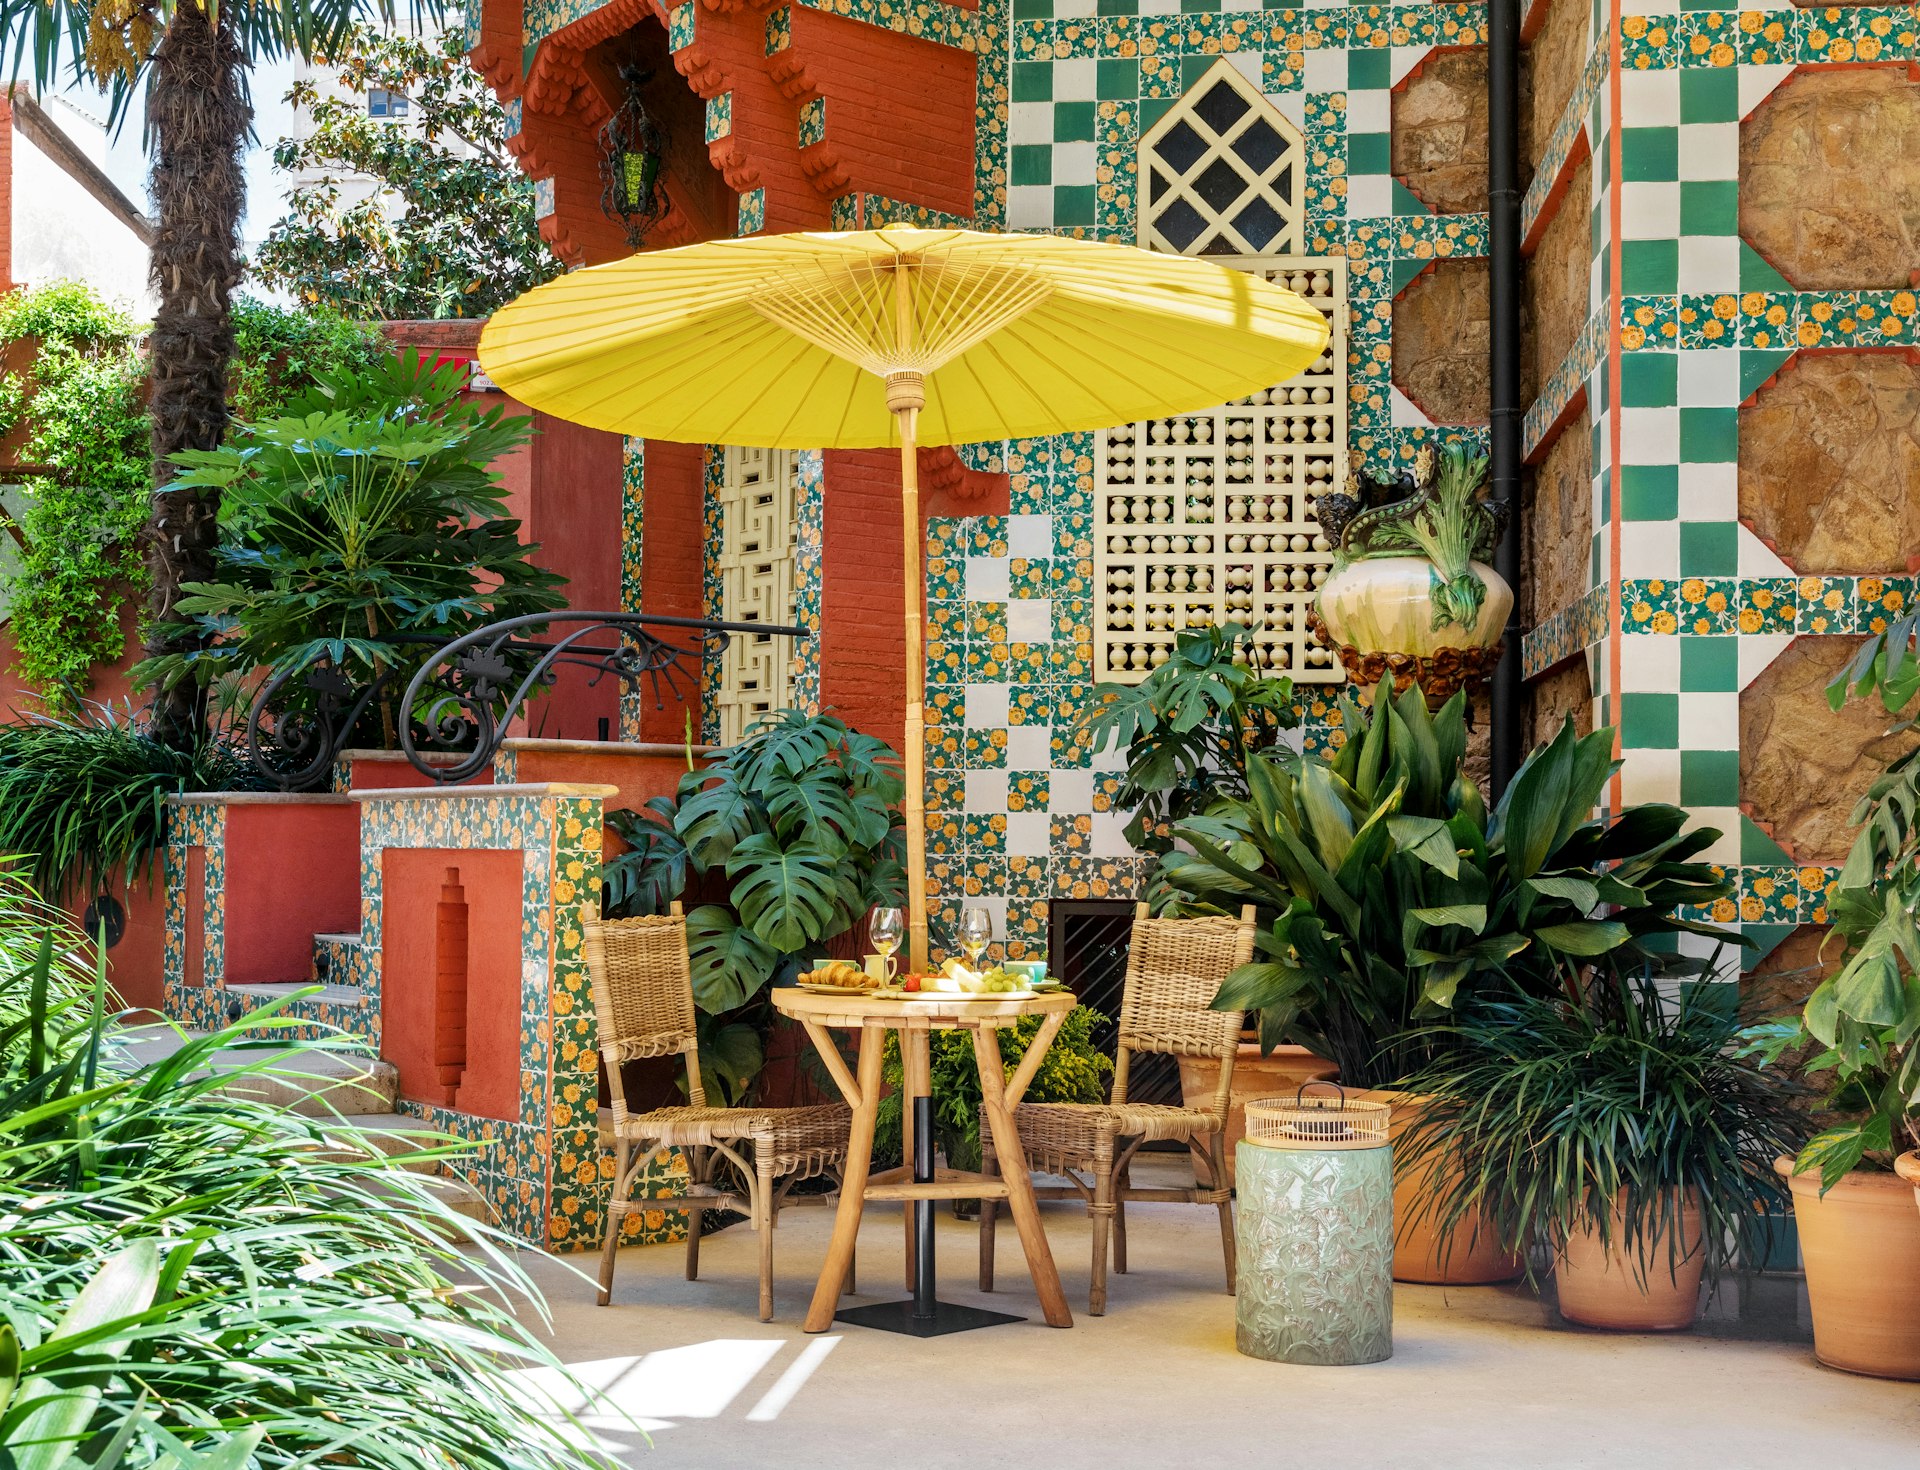 The Moorish-themed summer garden of Casa Vicens